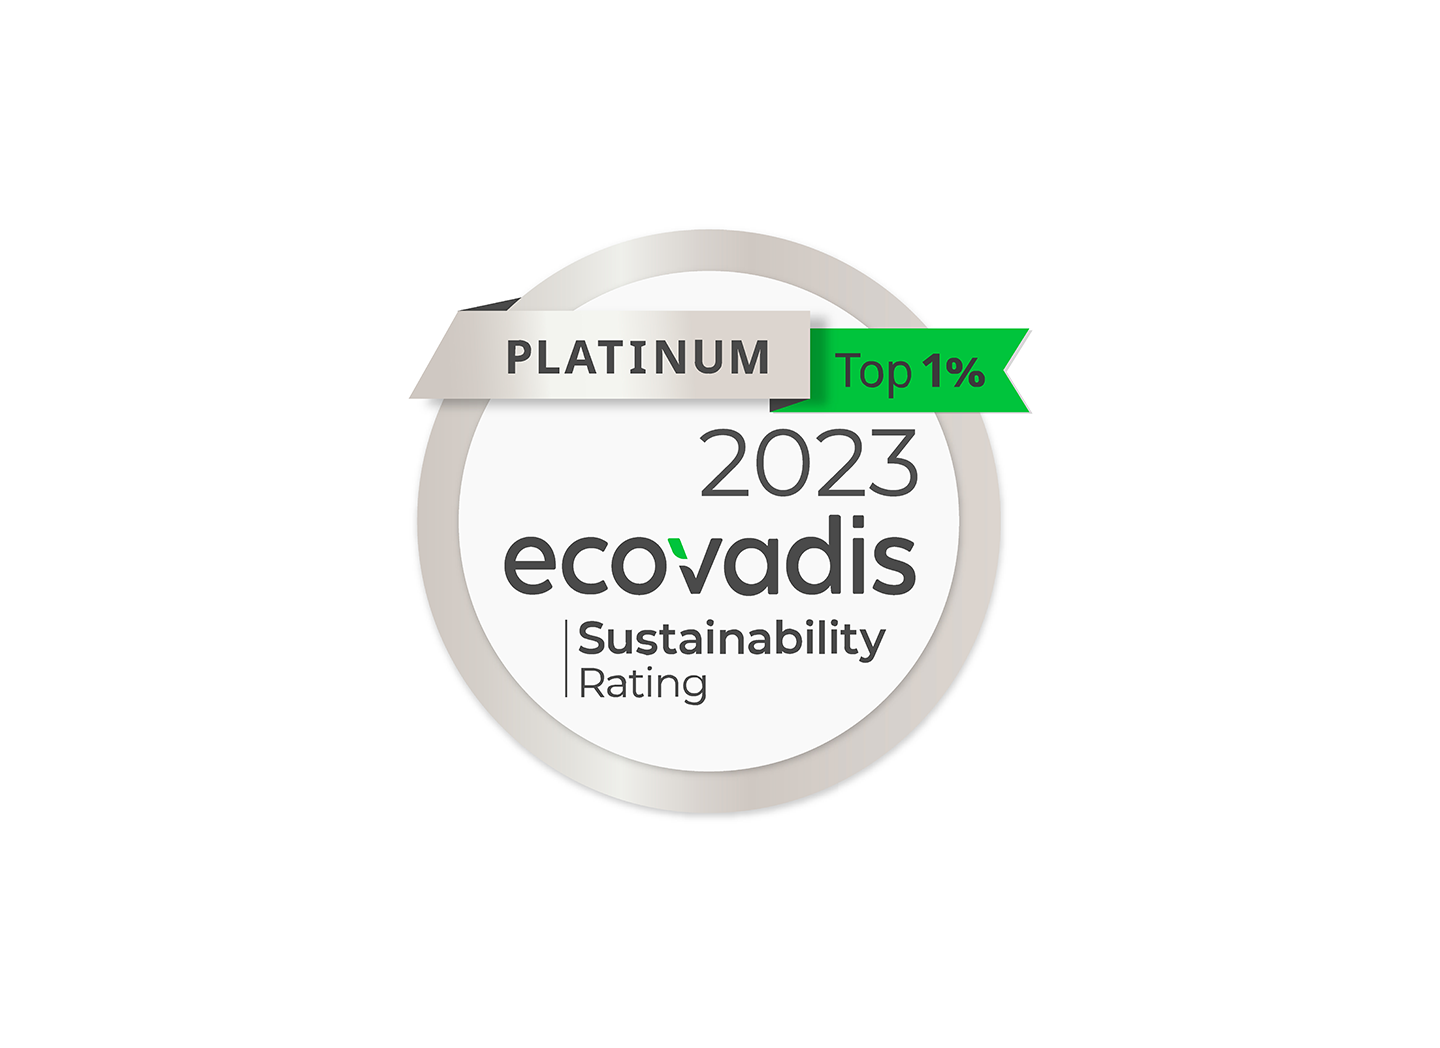 Ecovadis Sustainability Rating